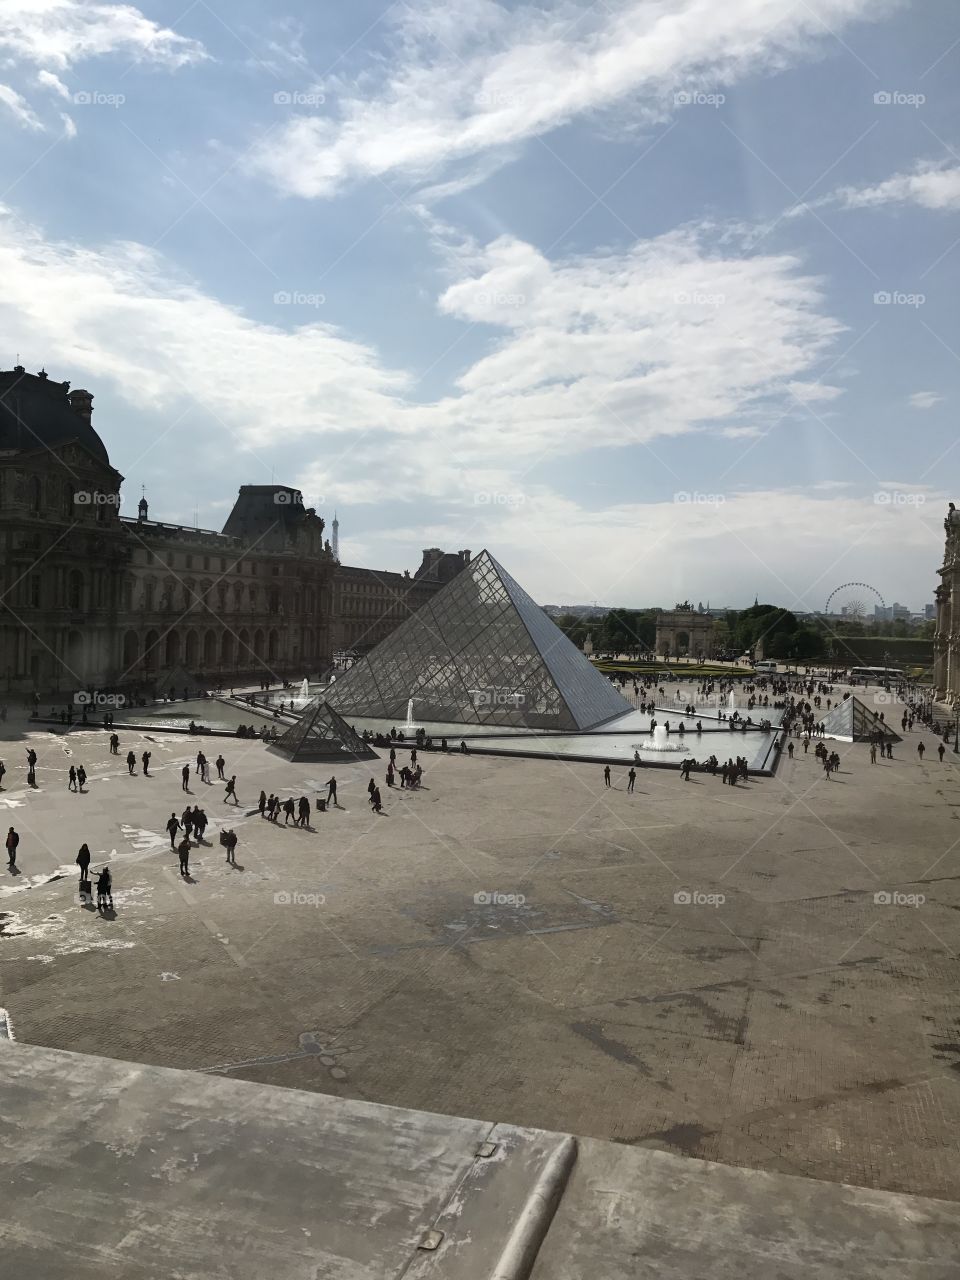 Paris, France
The Louvre